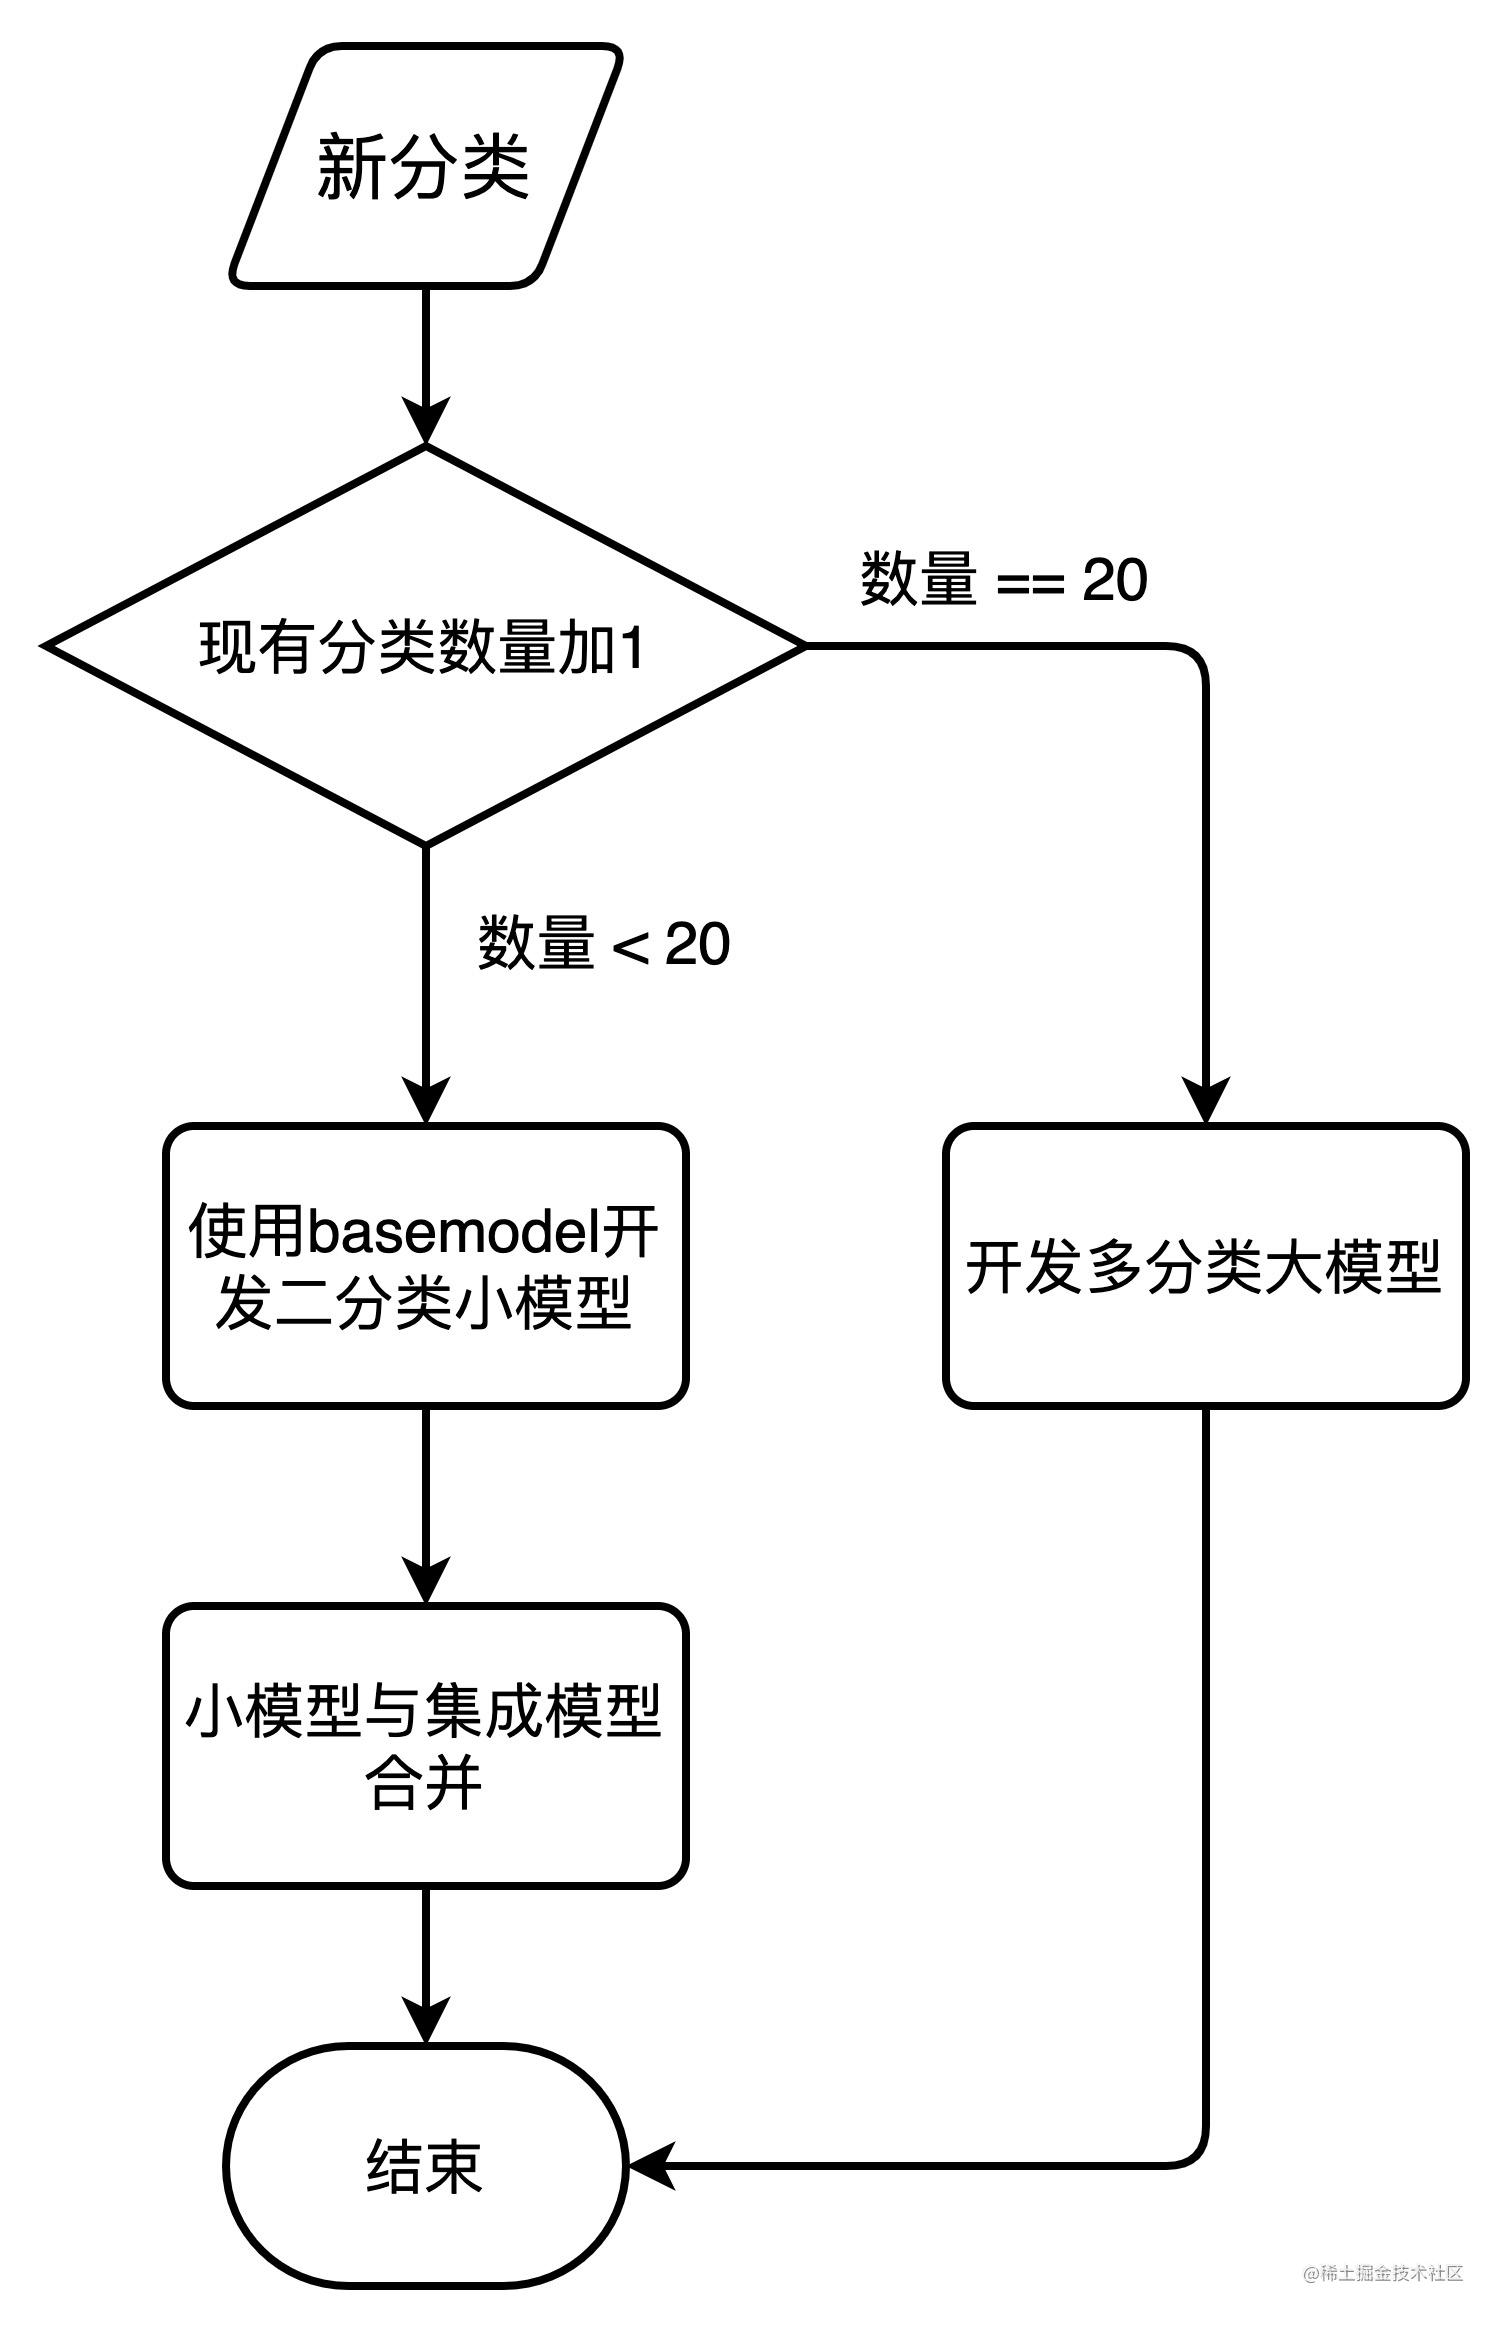 模型策略流程图